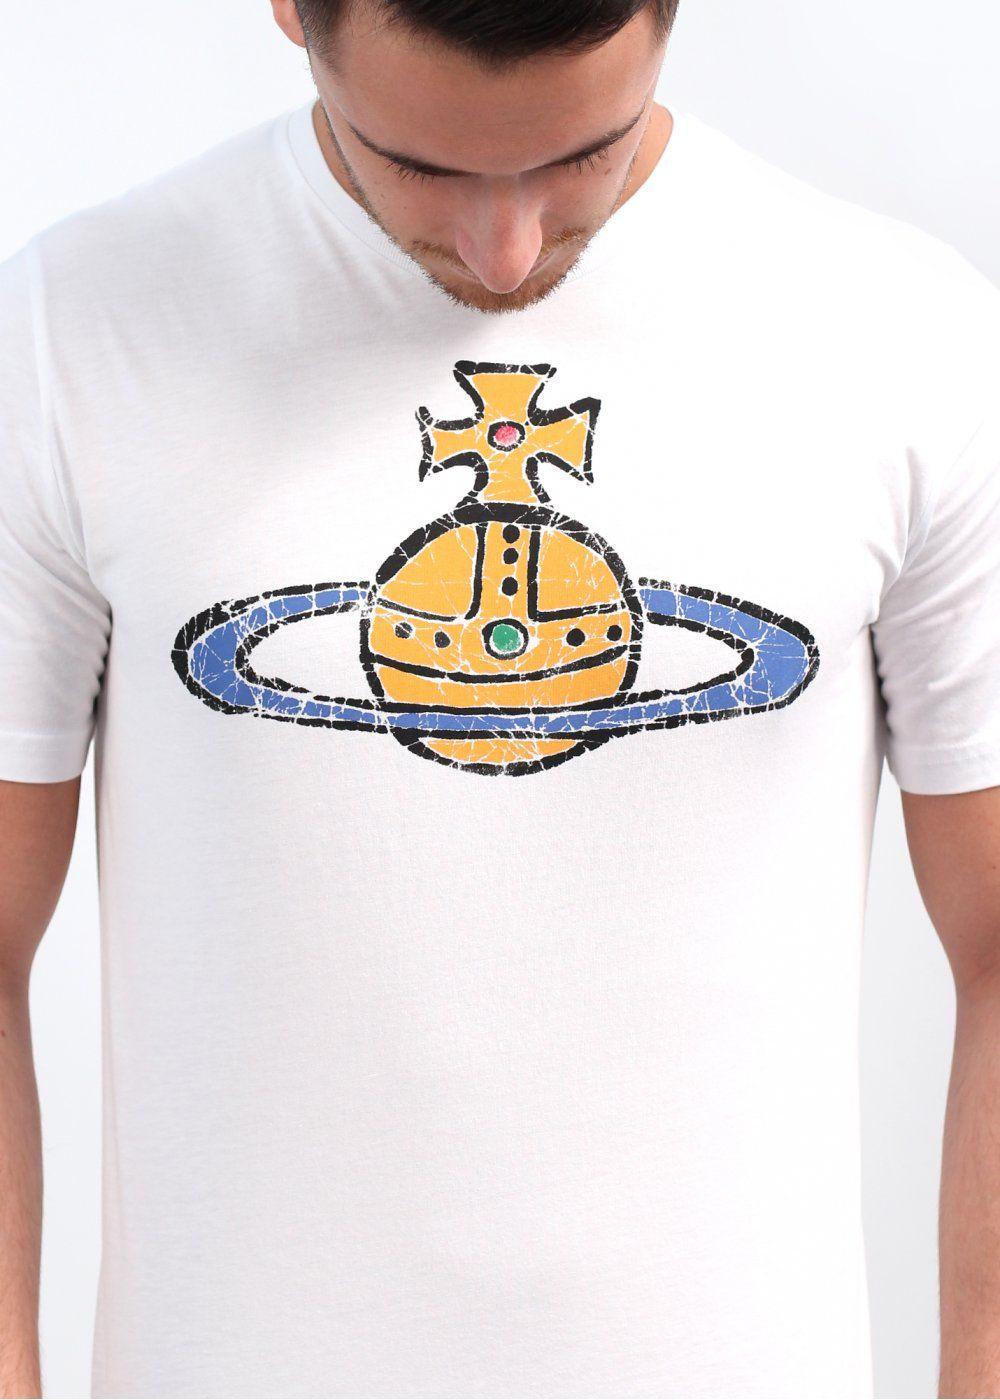 Vivienne Westwood Logo - Vivienne Westwood Logo T Shirt, SS14